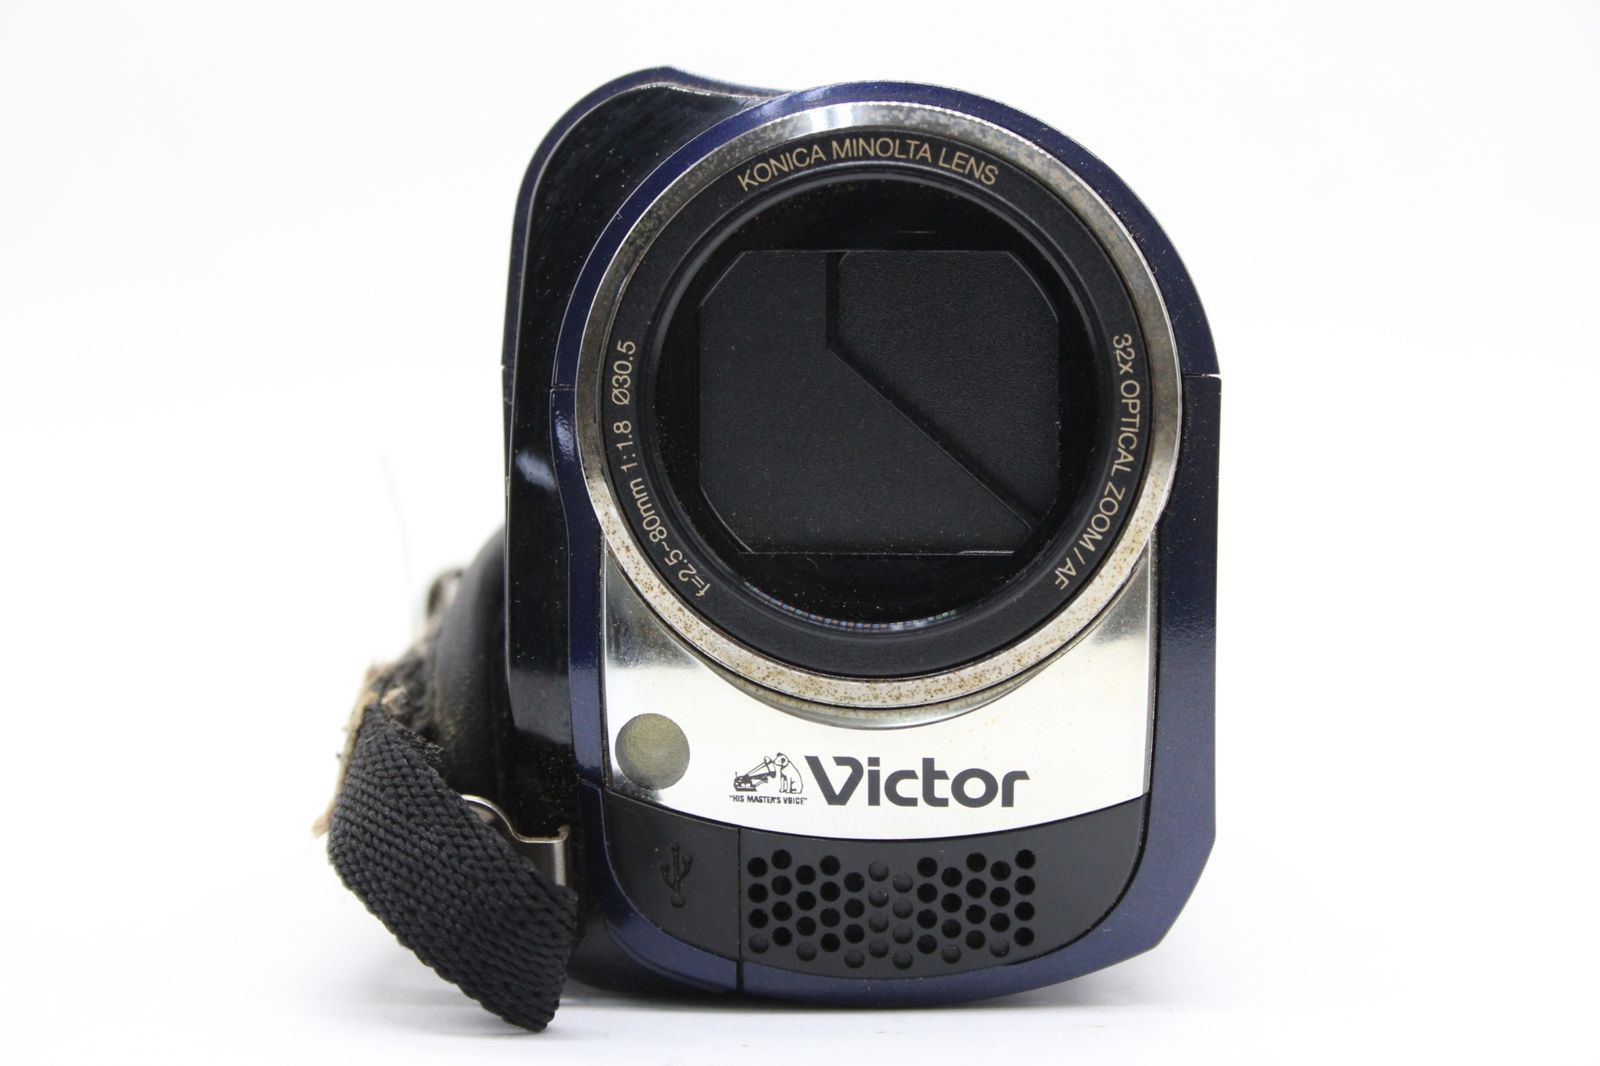 【返品保証】 【録画再生確認済み】ビクター Victor Everio GZ-MG330-A ブルー 32x バッテリー 元箱付き ビデオカメラ  v1234